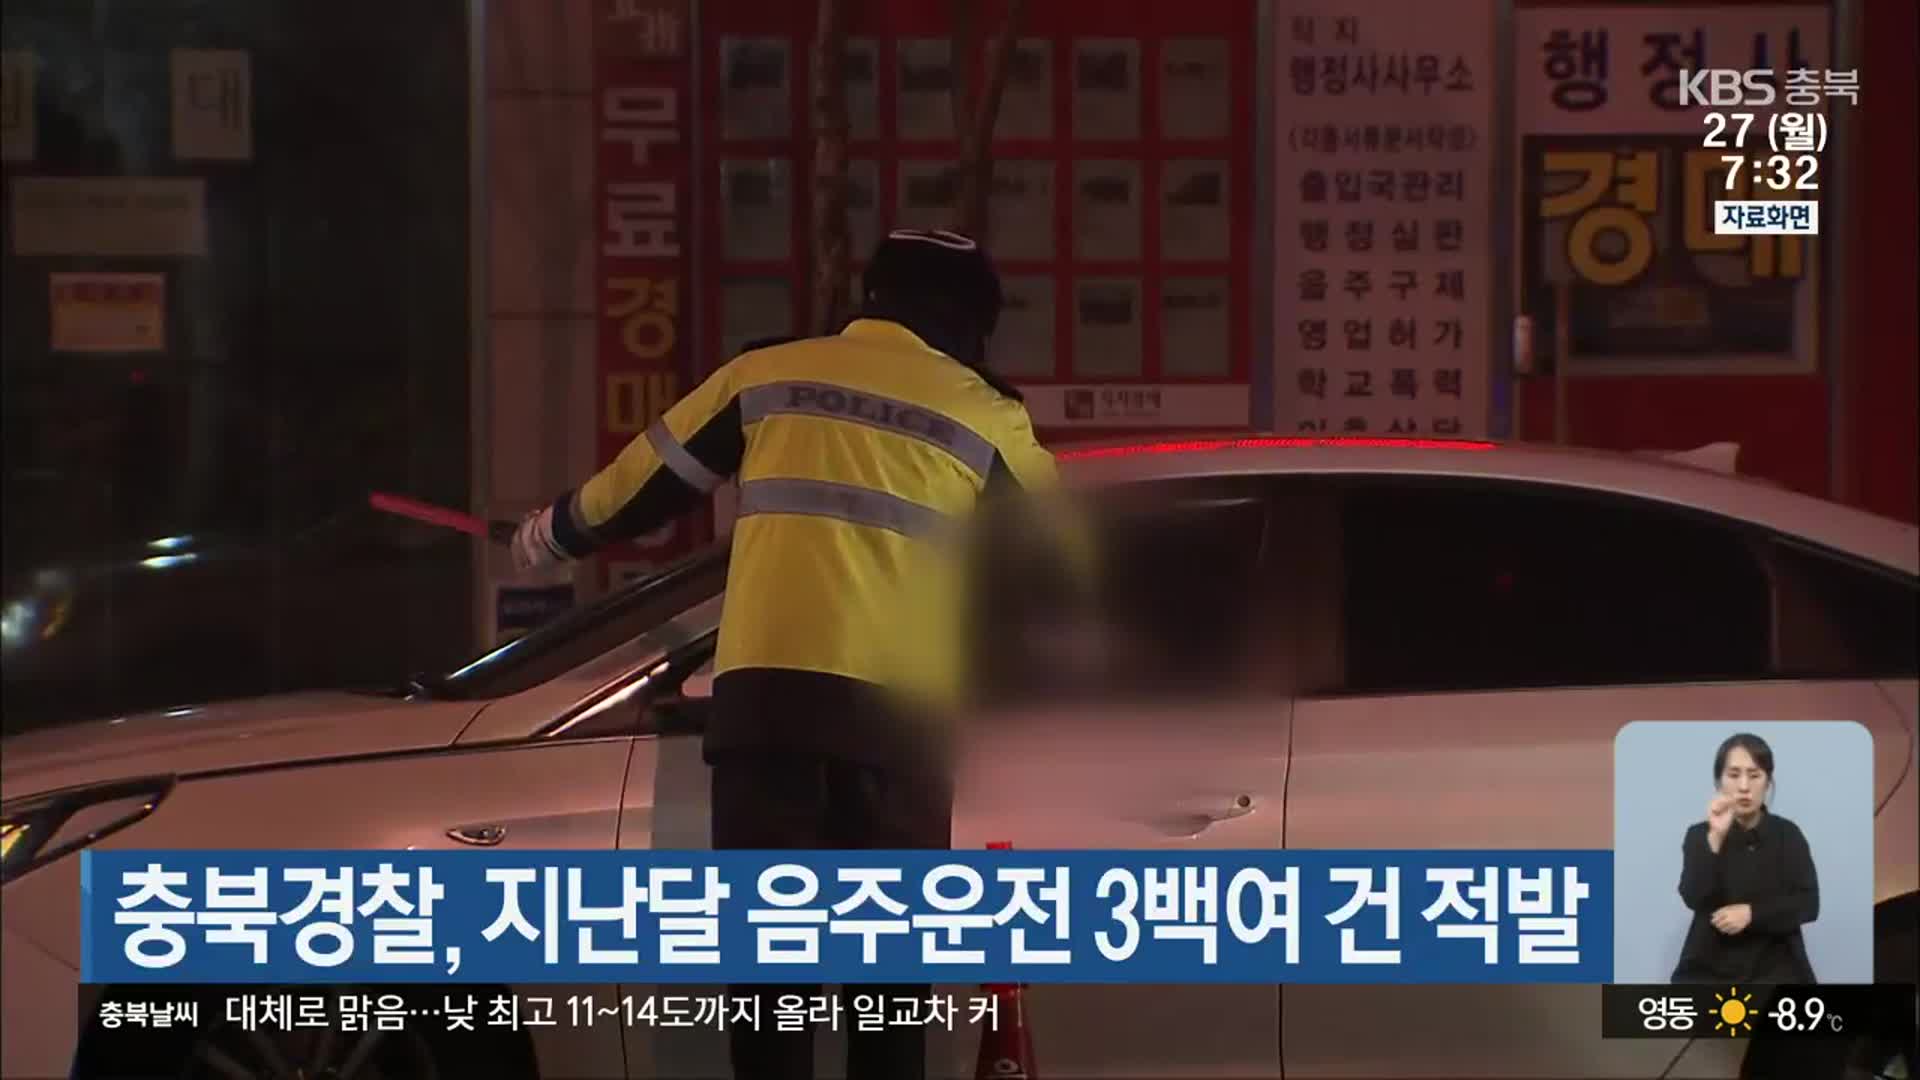 충북경찰, 지난달 음주운전 3백여 건 적발